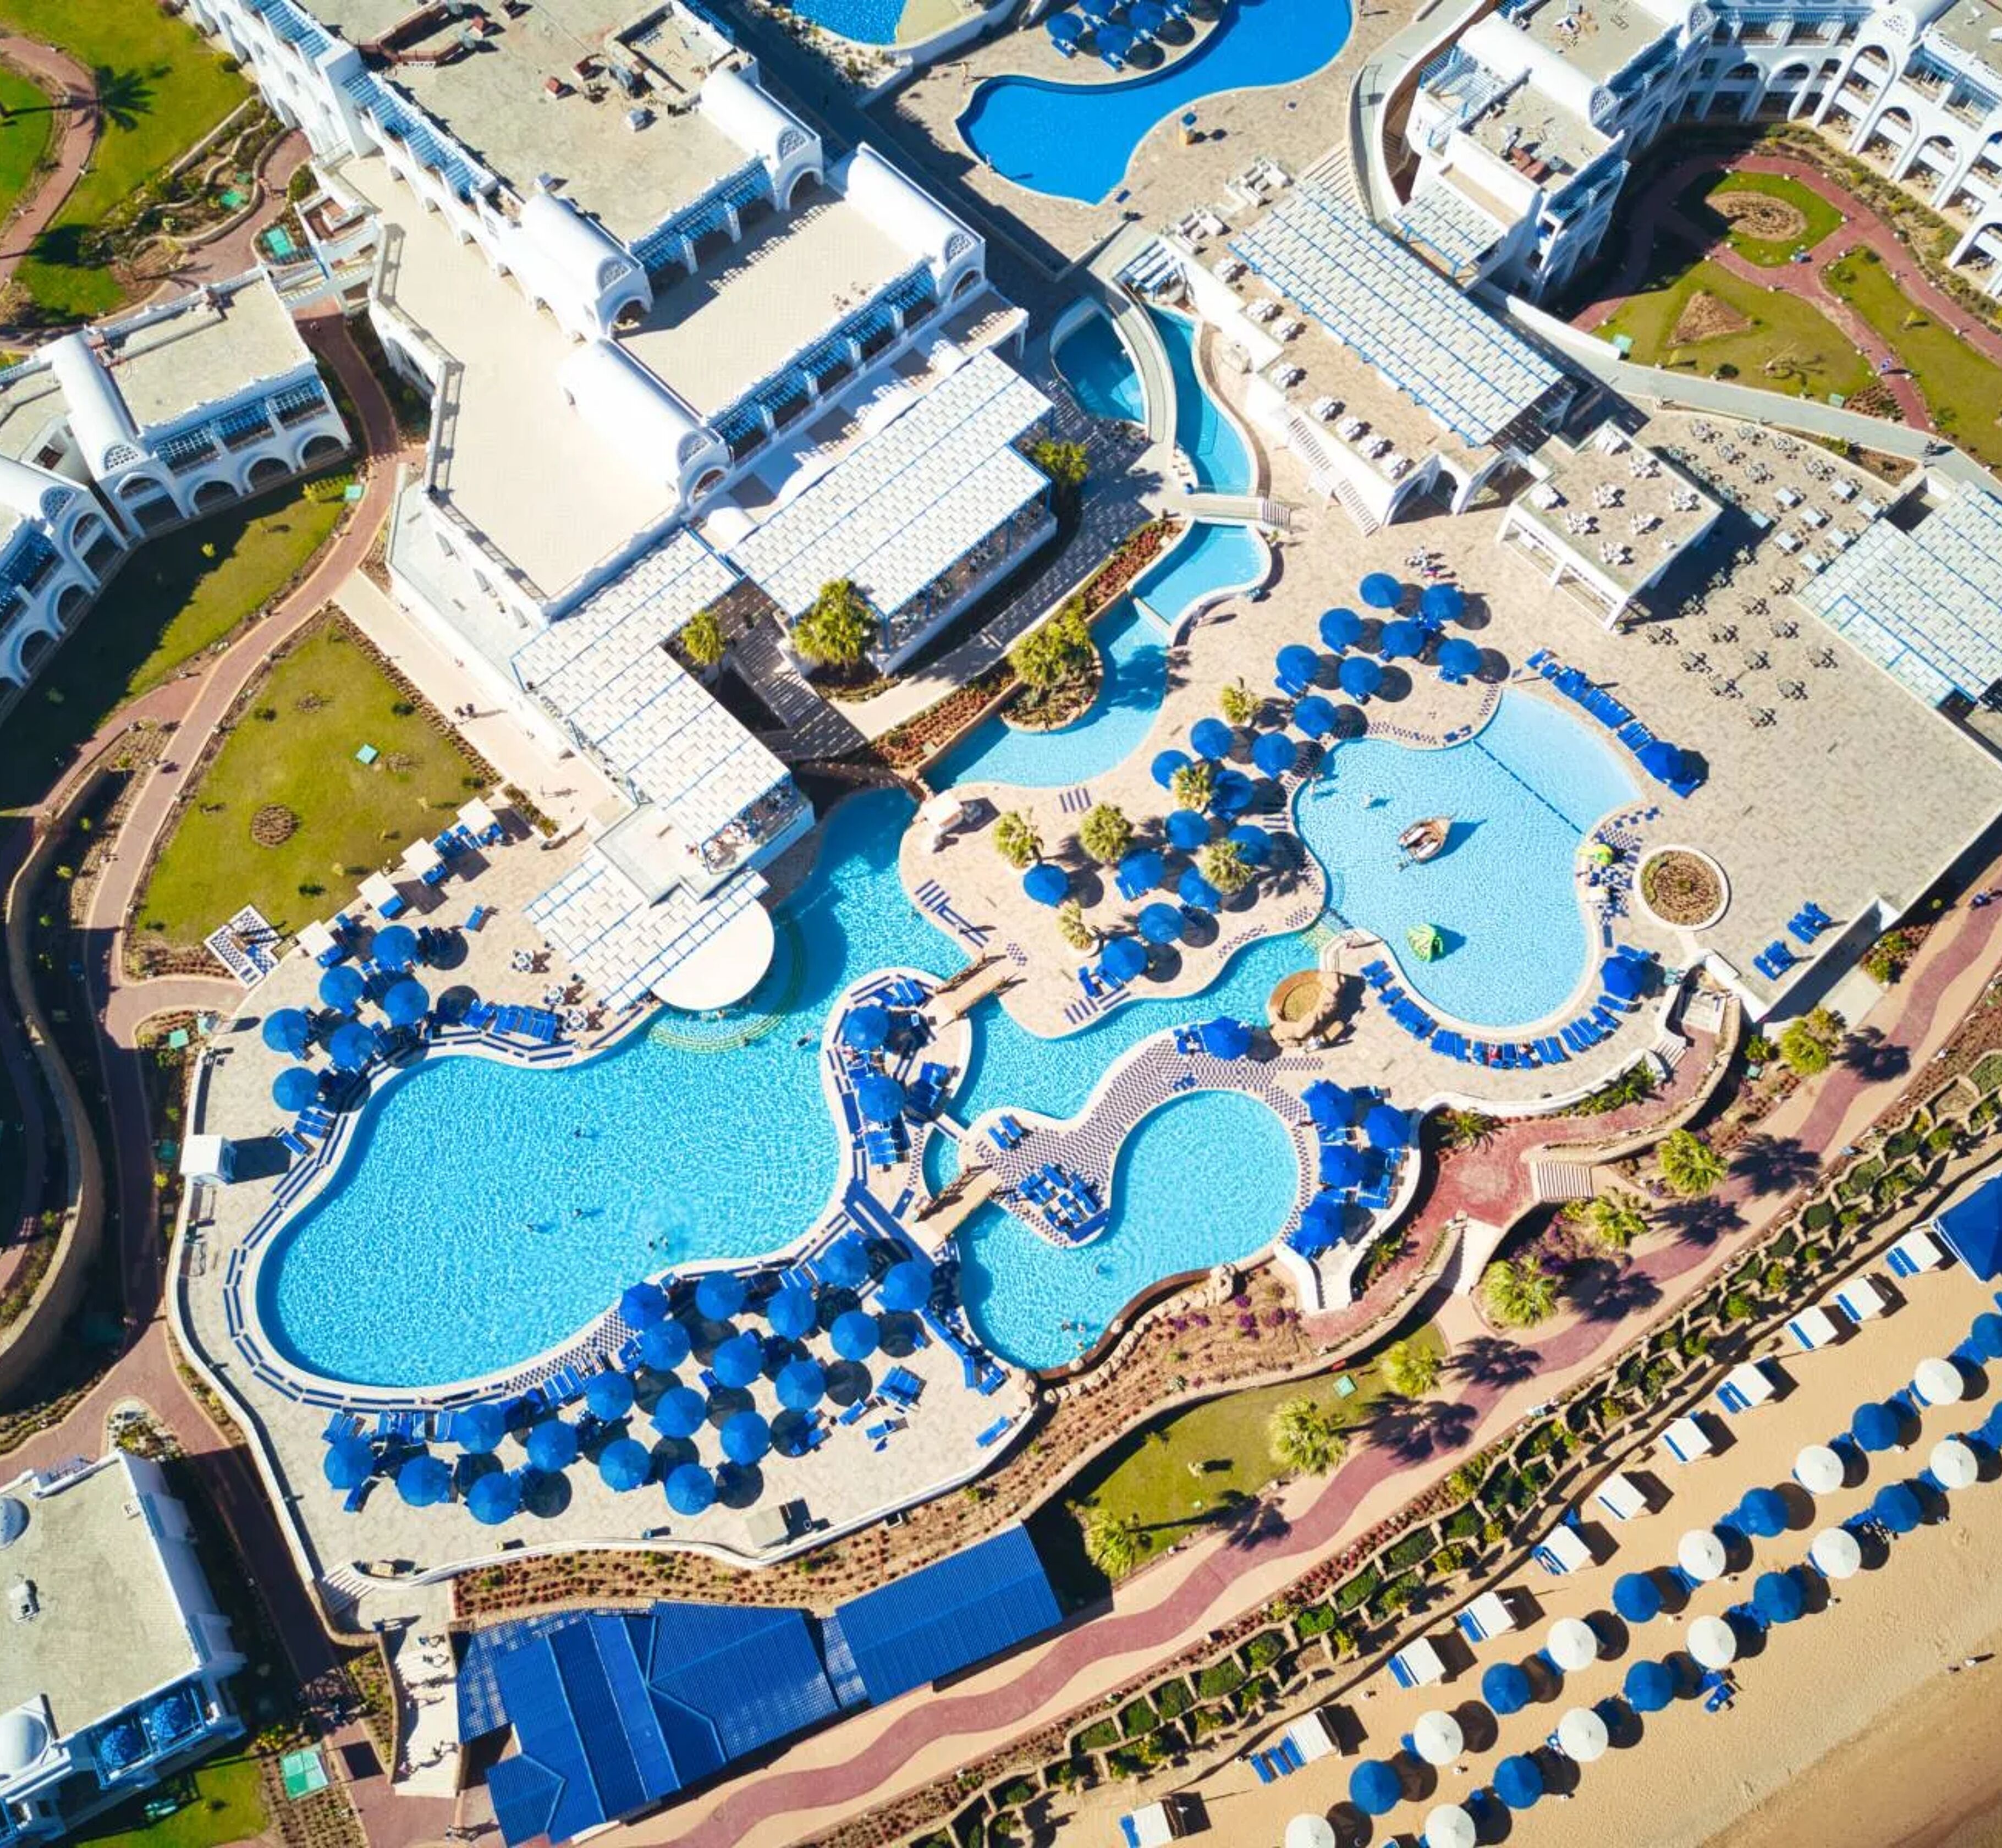 Albatros Palace Resort Sharm